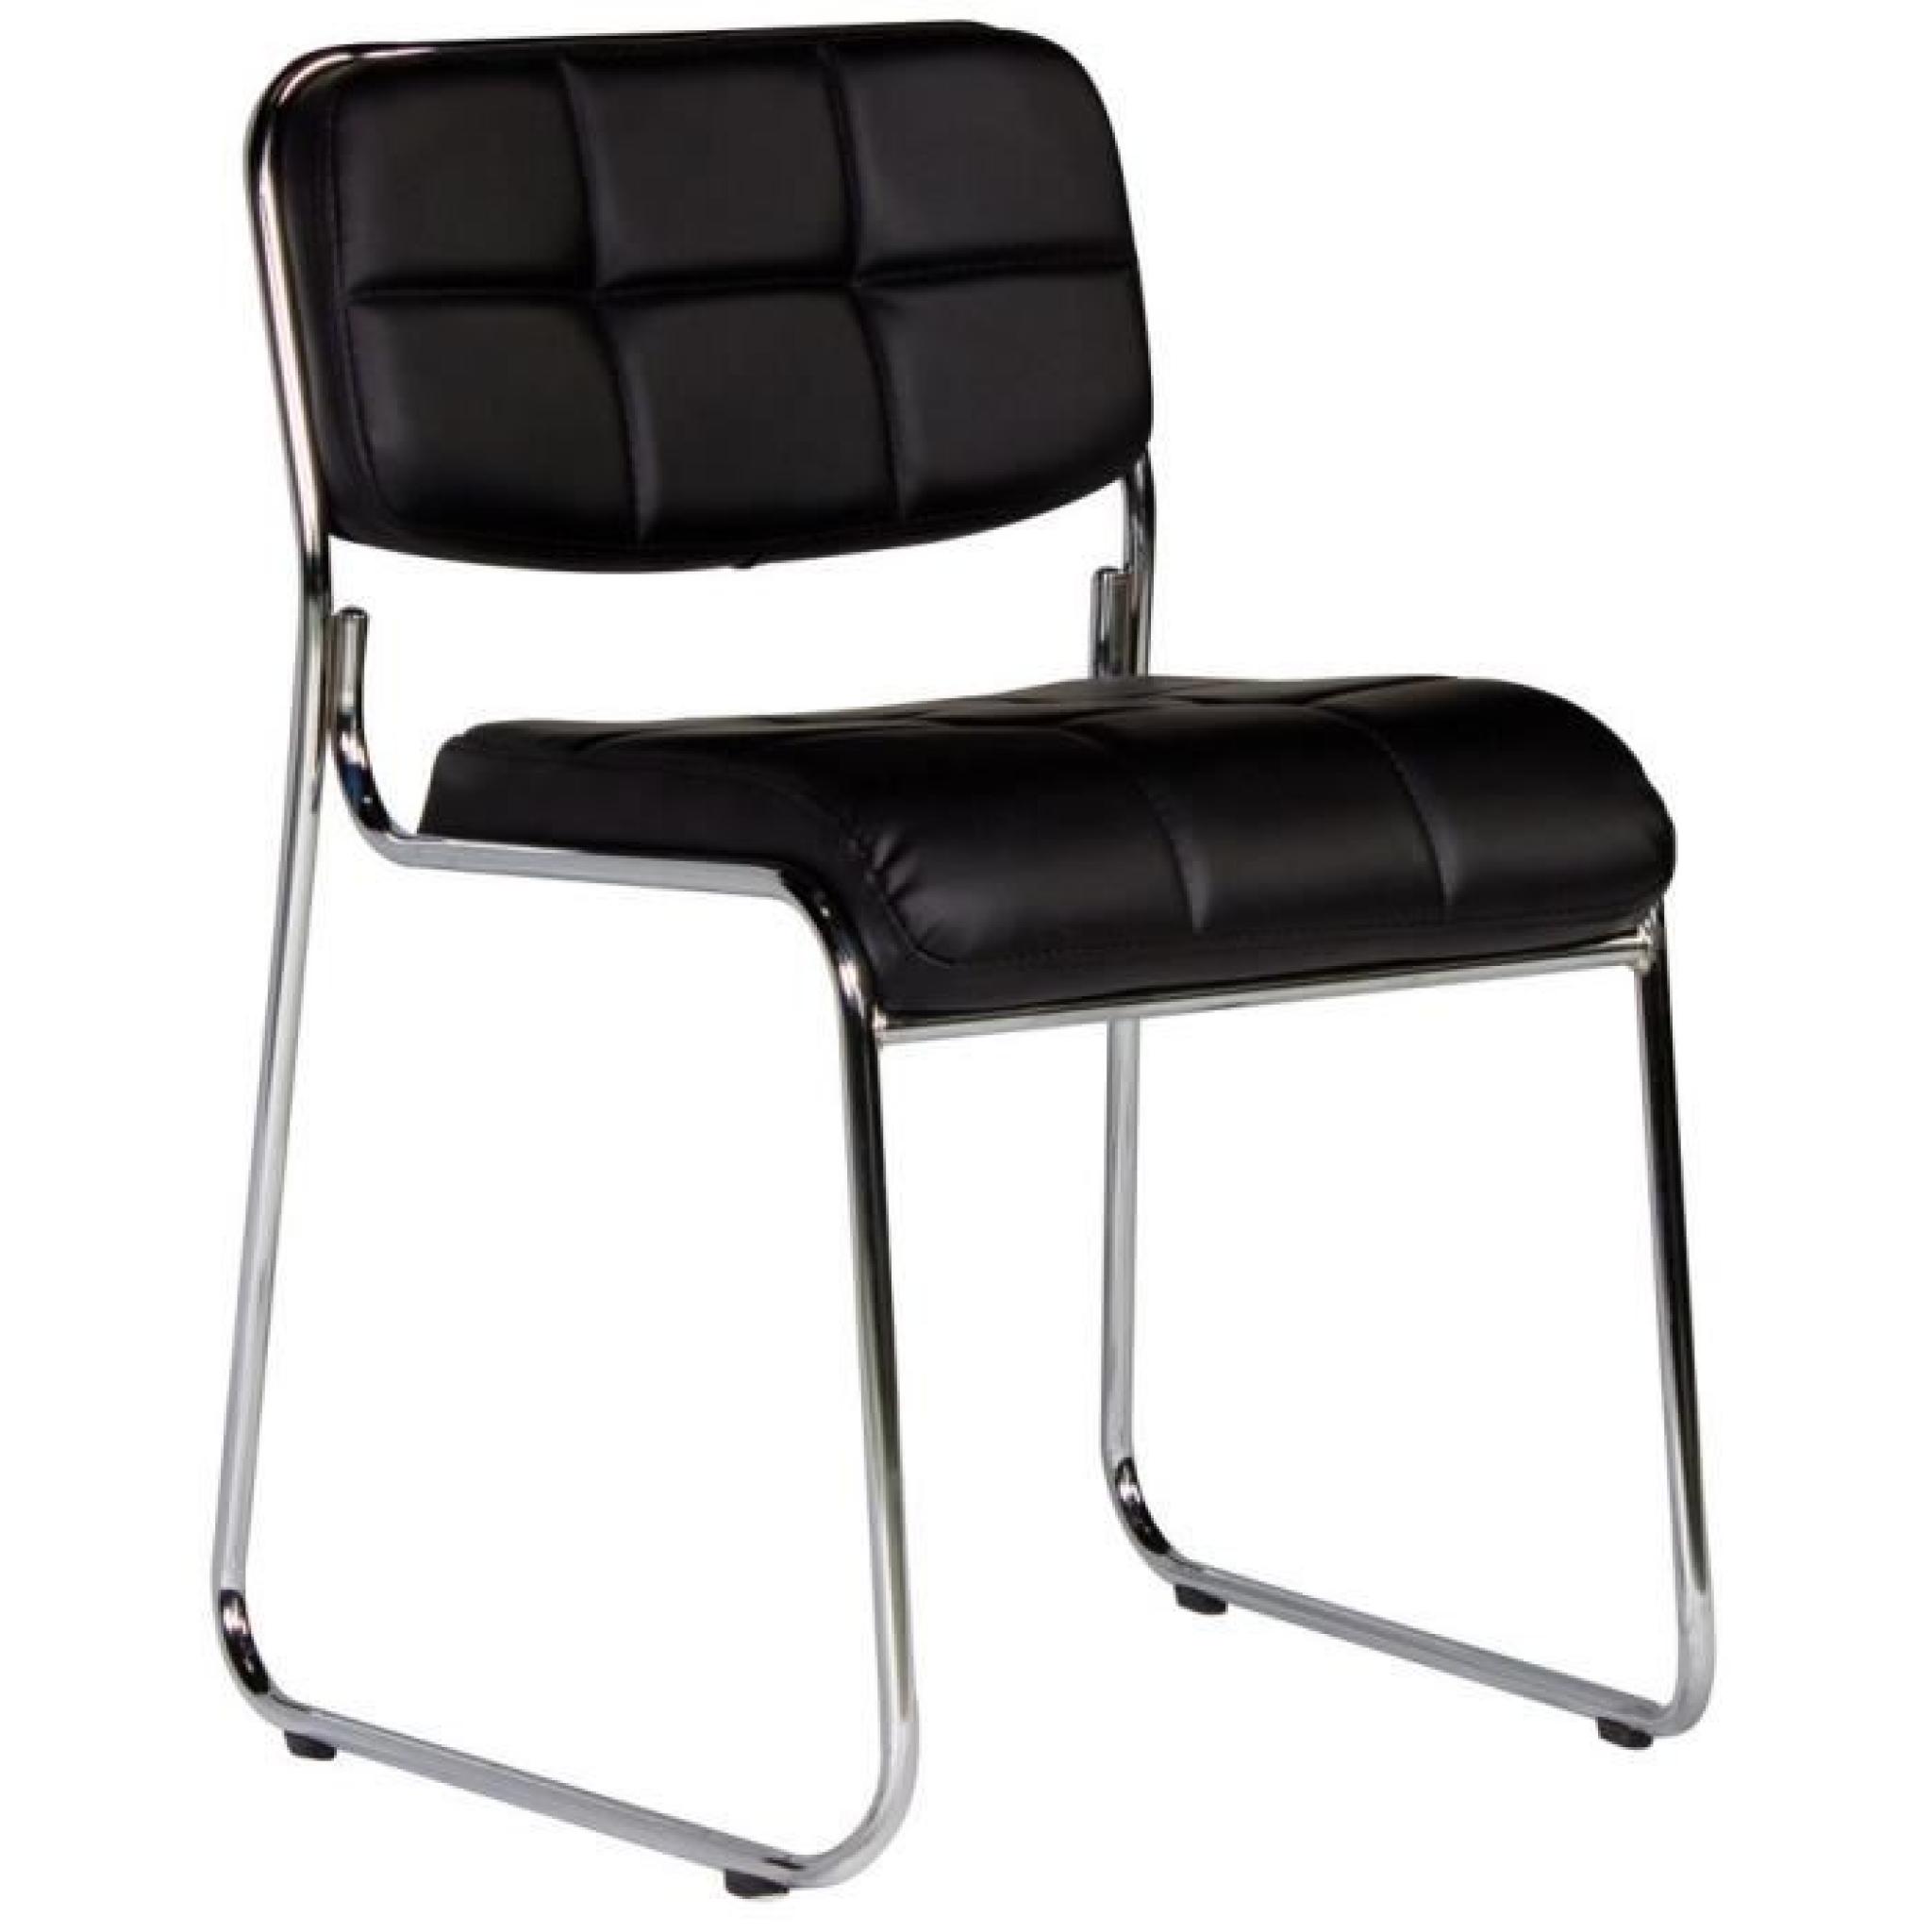 Chaise capitonnée sans accoudoirs coloris noir moderne